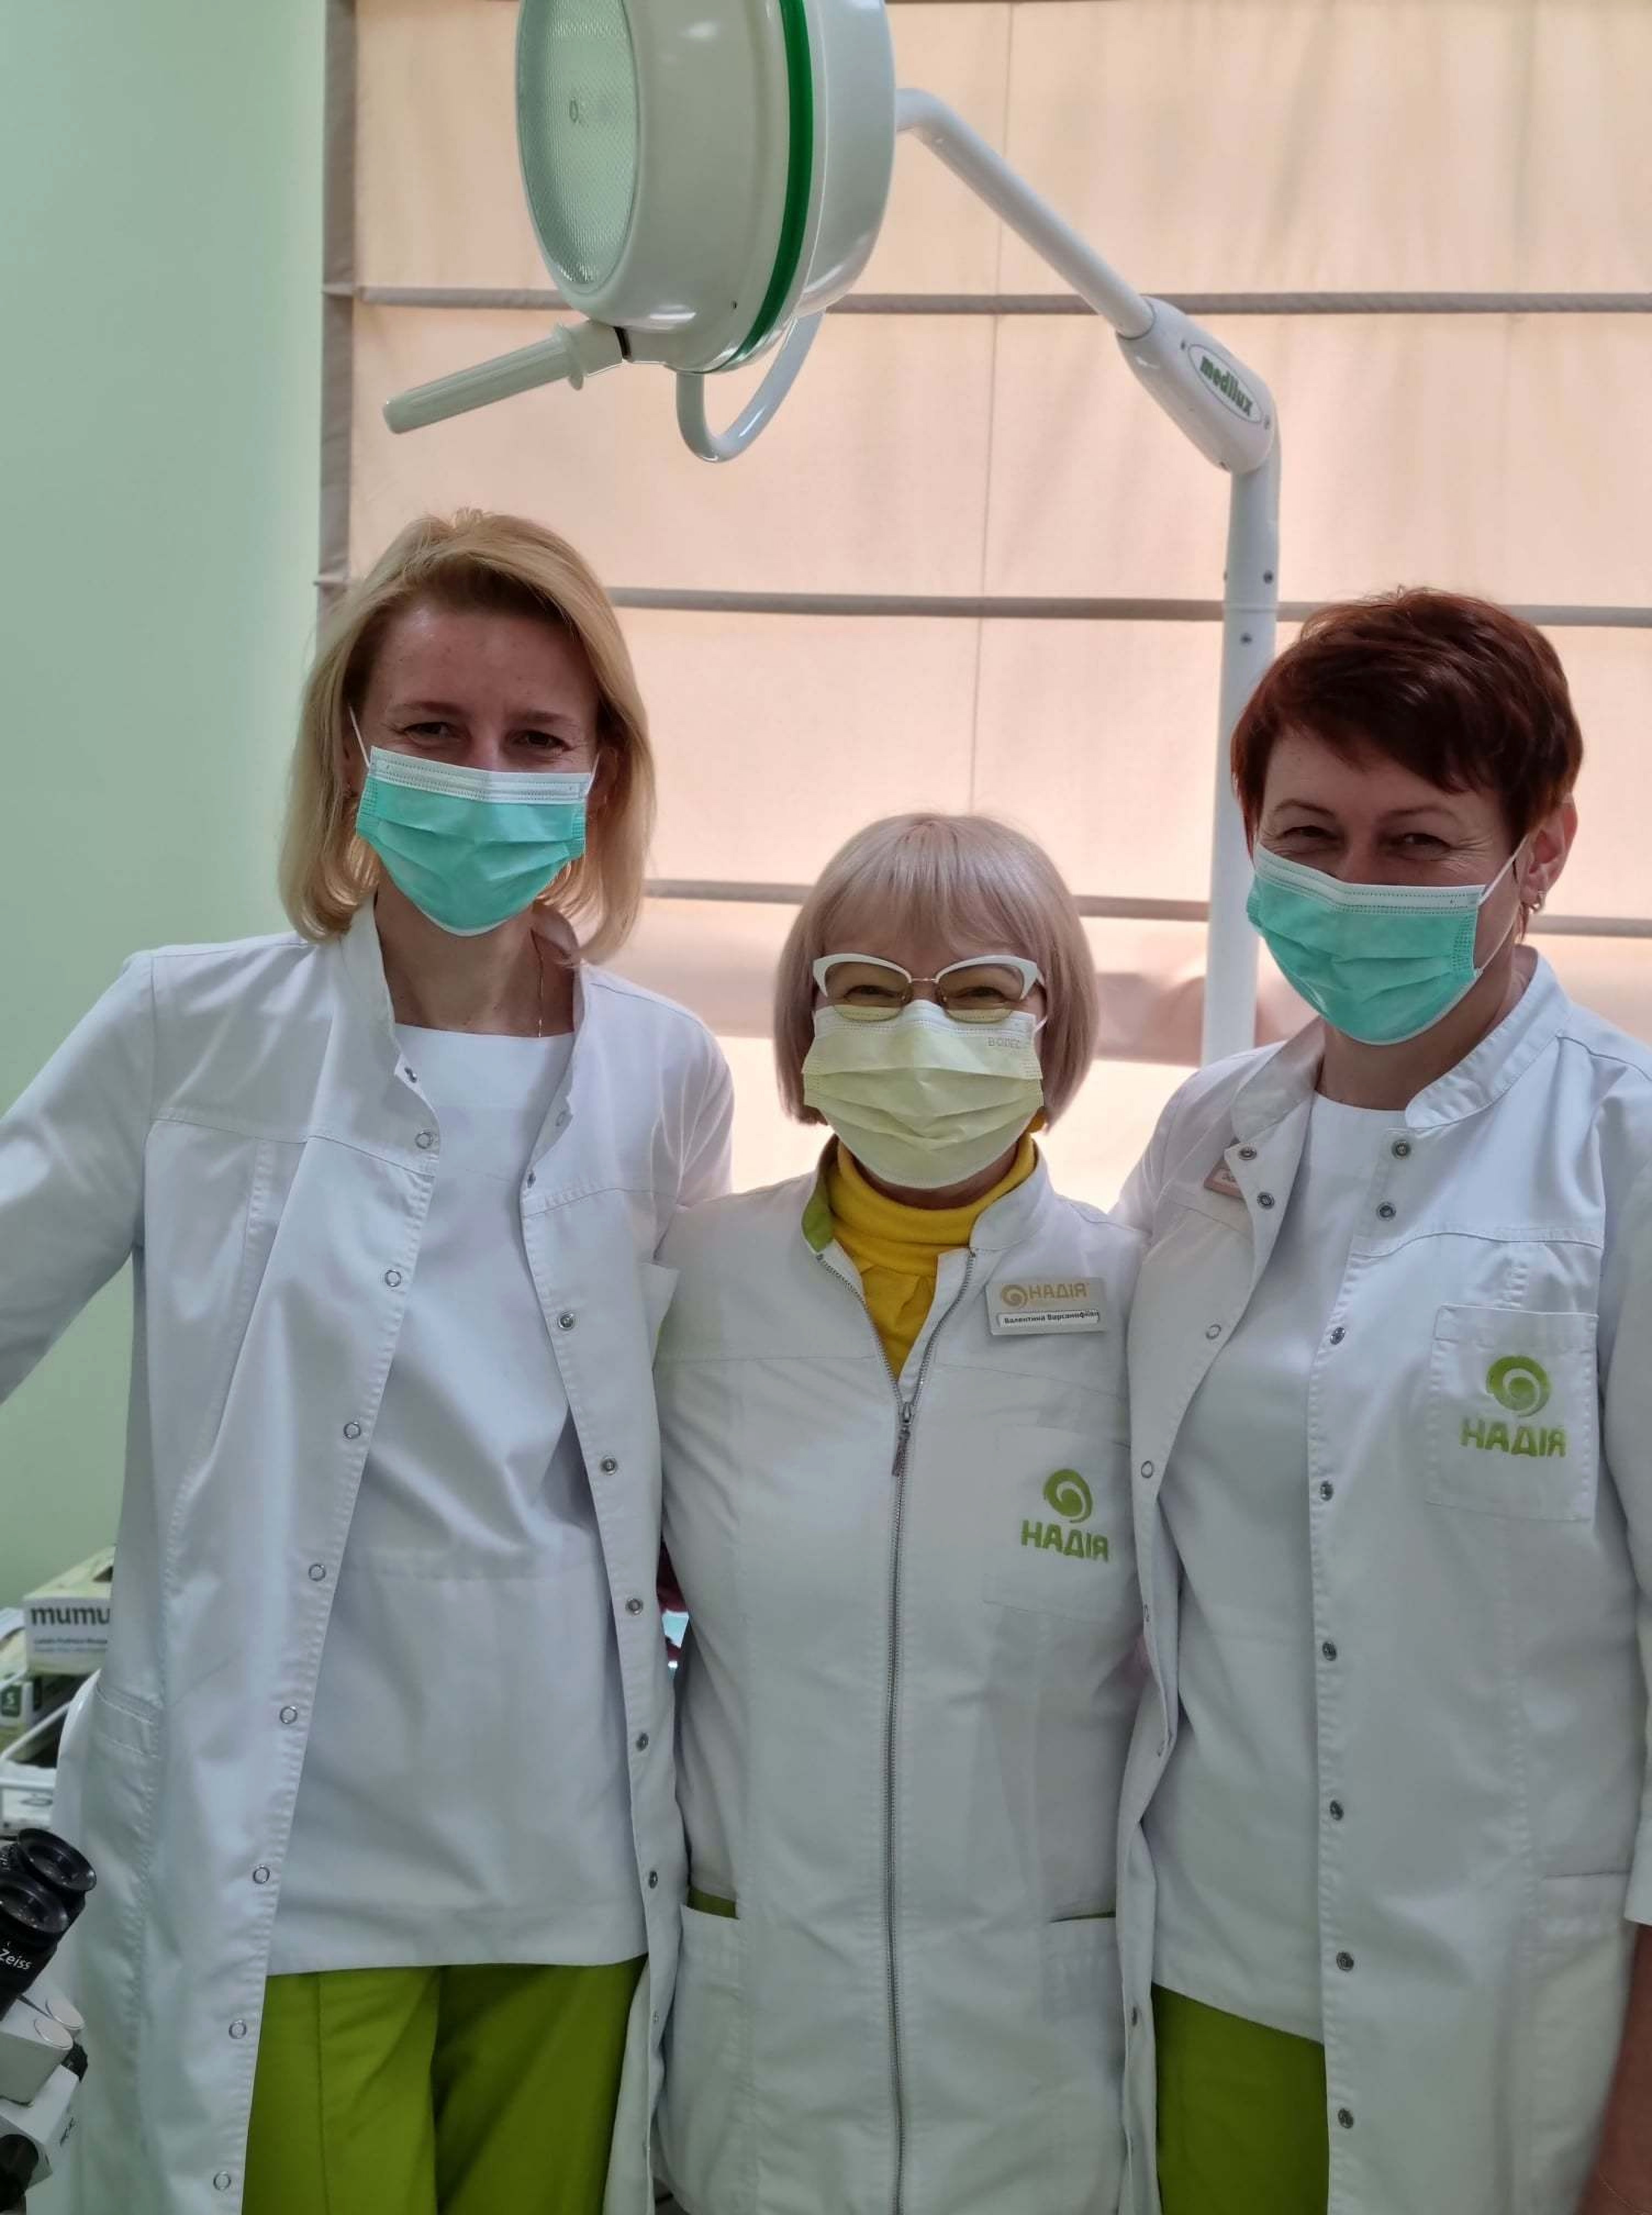 Medical staff at Nadia Clinic in Kiev Ukraine